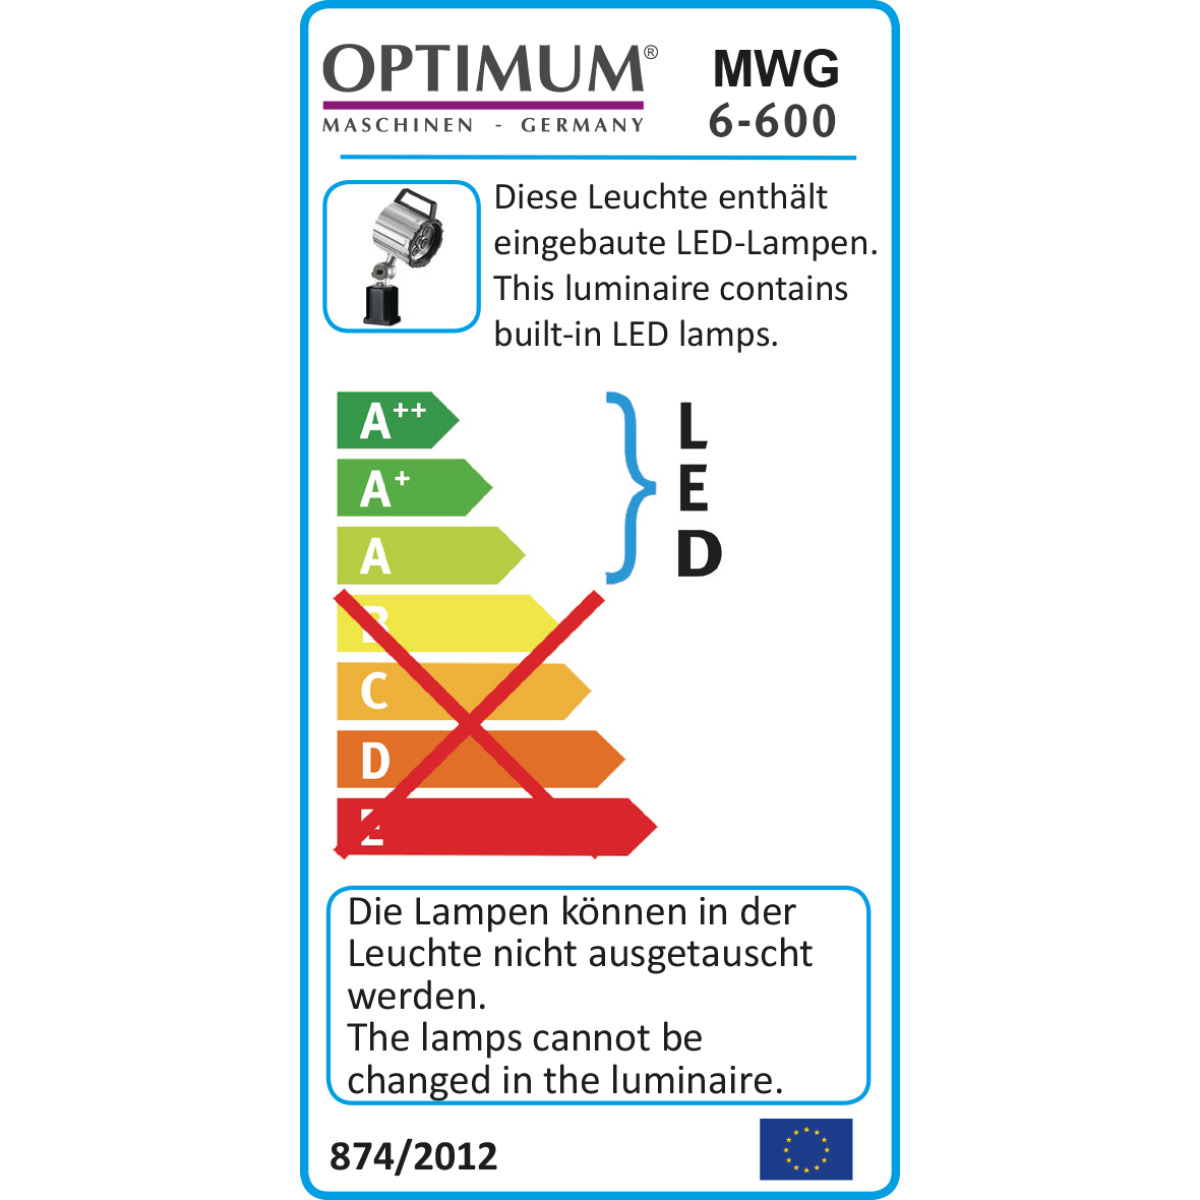  Optimum LED Maschinen- und Werkstattleuchte MWG 6-600 